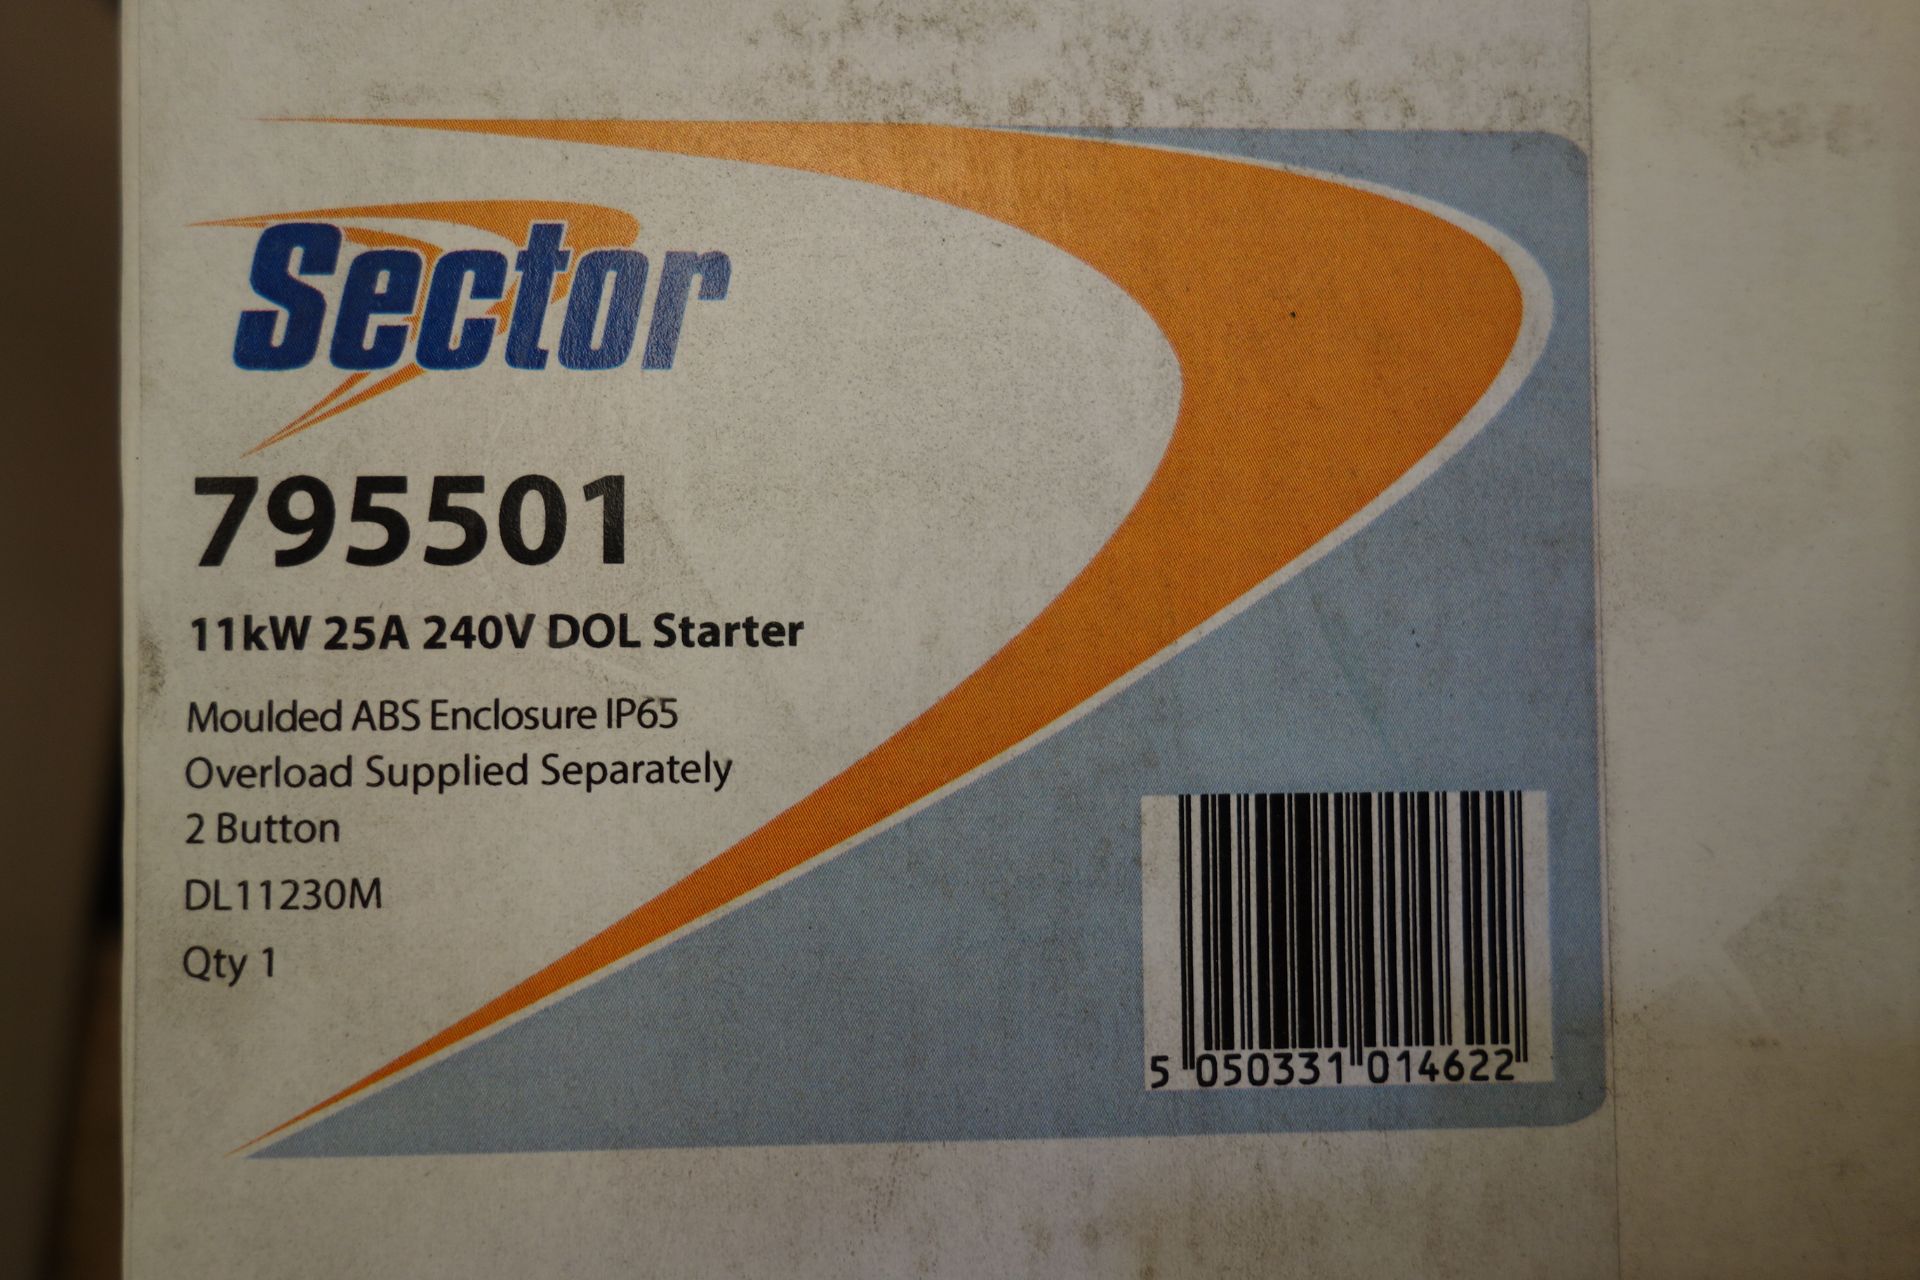 6 X Sector 795501 11kW 25A 240V Dol Starter IP65 Enclosure